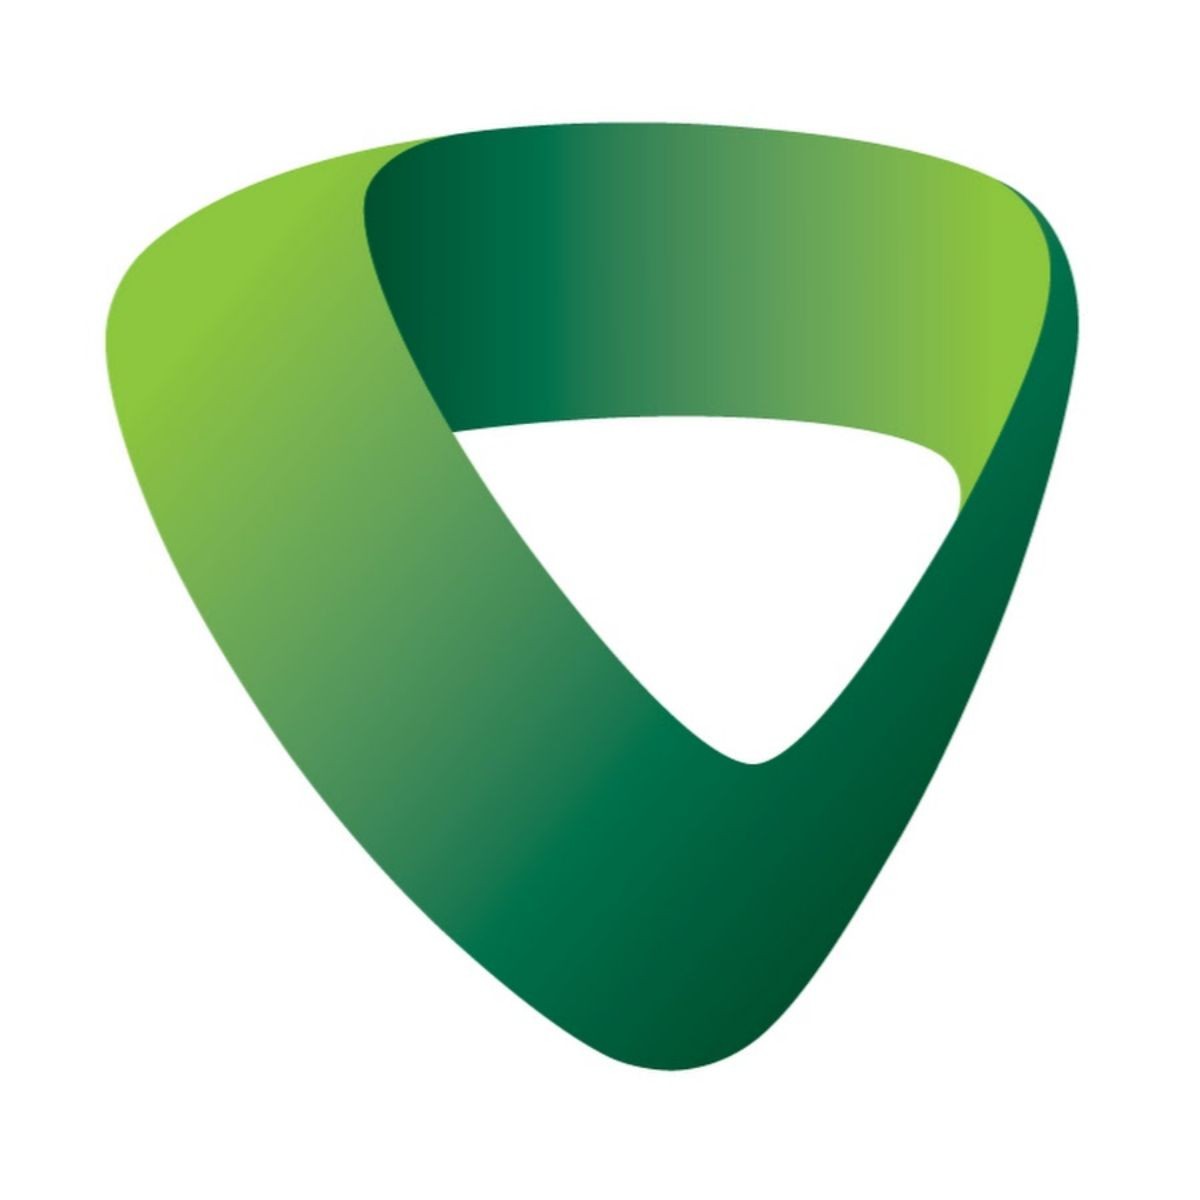 
Logo của ngân hàng Vietcombank mang nhiều ý nghĩa nhất định
